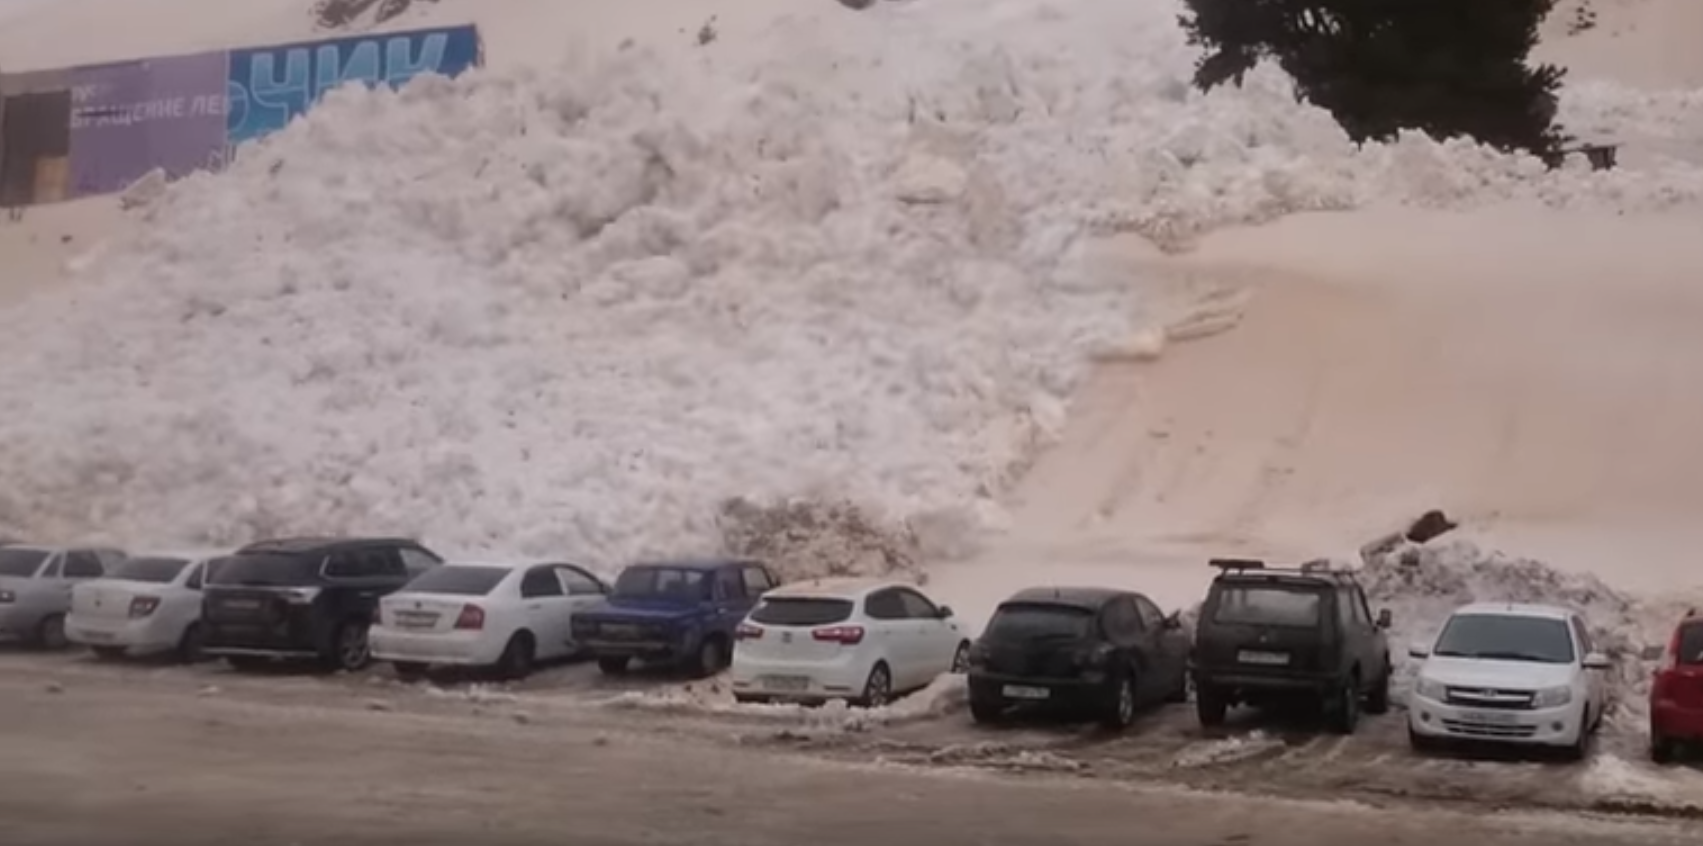 Η μικρή χιονοστιβάδα που έγινε μεγάλη και παρέσυρε όλα τα αυτοκίνητα σε πάρκινγκ χιονοδρομικού - BINTEO